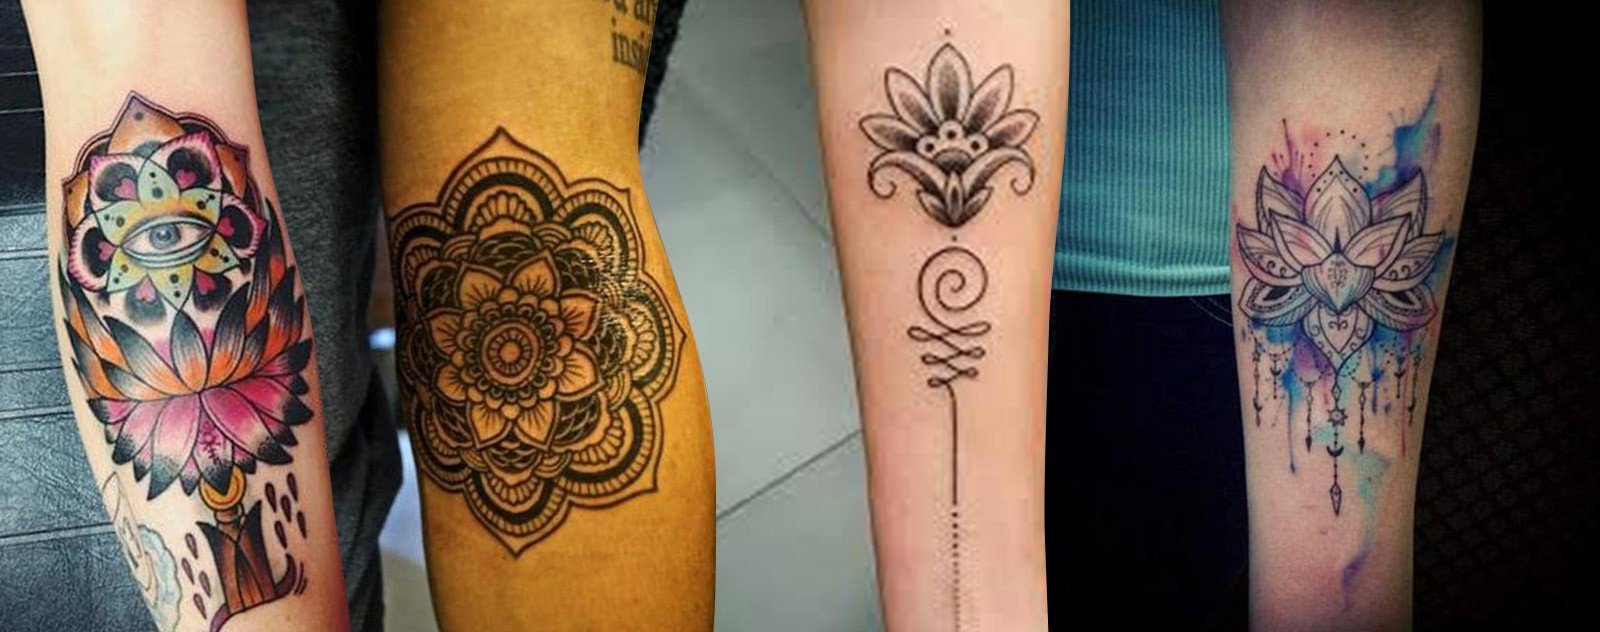 Cuisse dentelle femmes tatouage fleure de lotus 